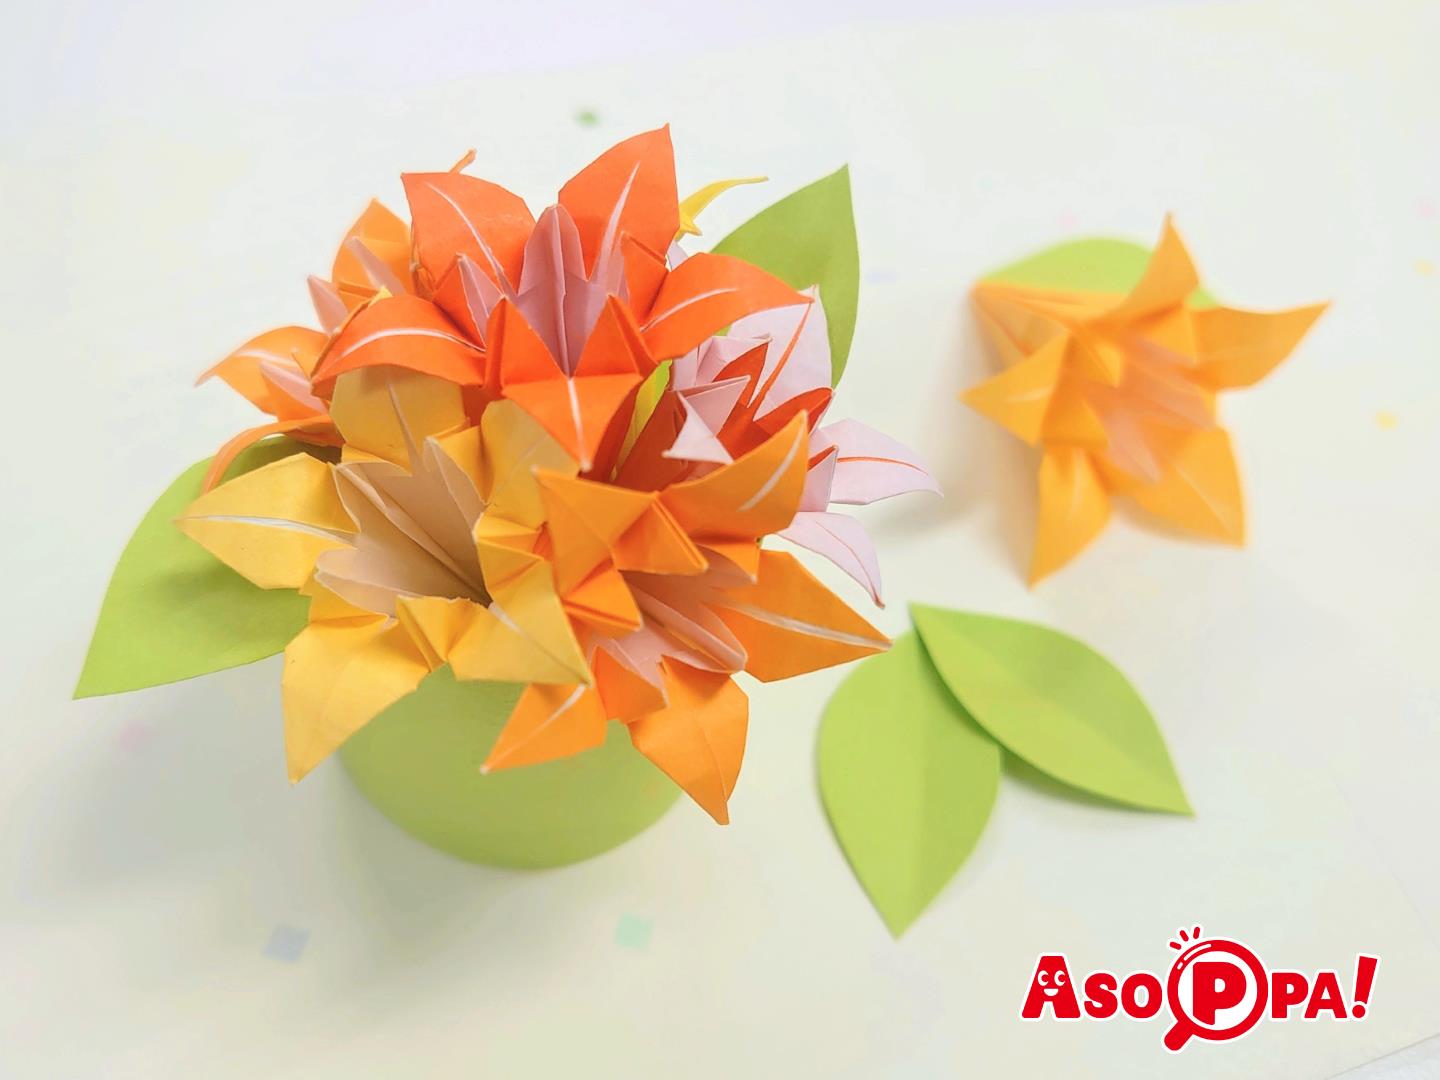 おりがみの花 花びら5枚 五弁 で豪華さあふれるのオリジナル立体花の折り方 折り紙 Asoppa レシピ あそっぱ